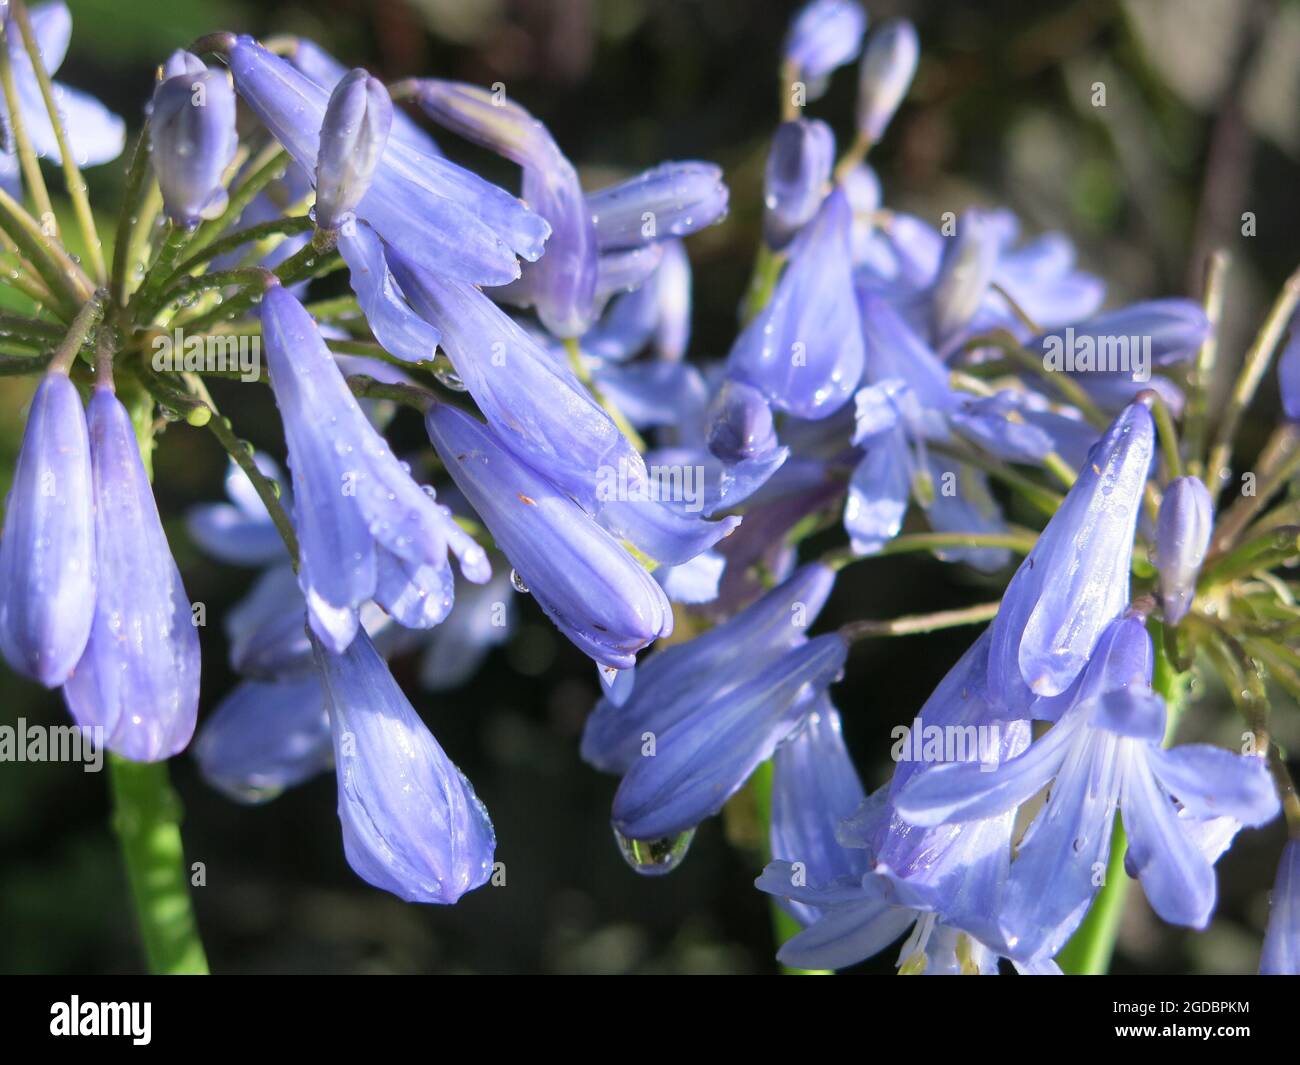 Primer plano de las campanas tubulares azul pálido de un agapanthus en plena floración. Foto de stock